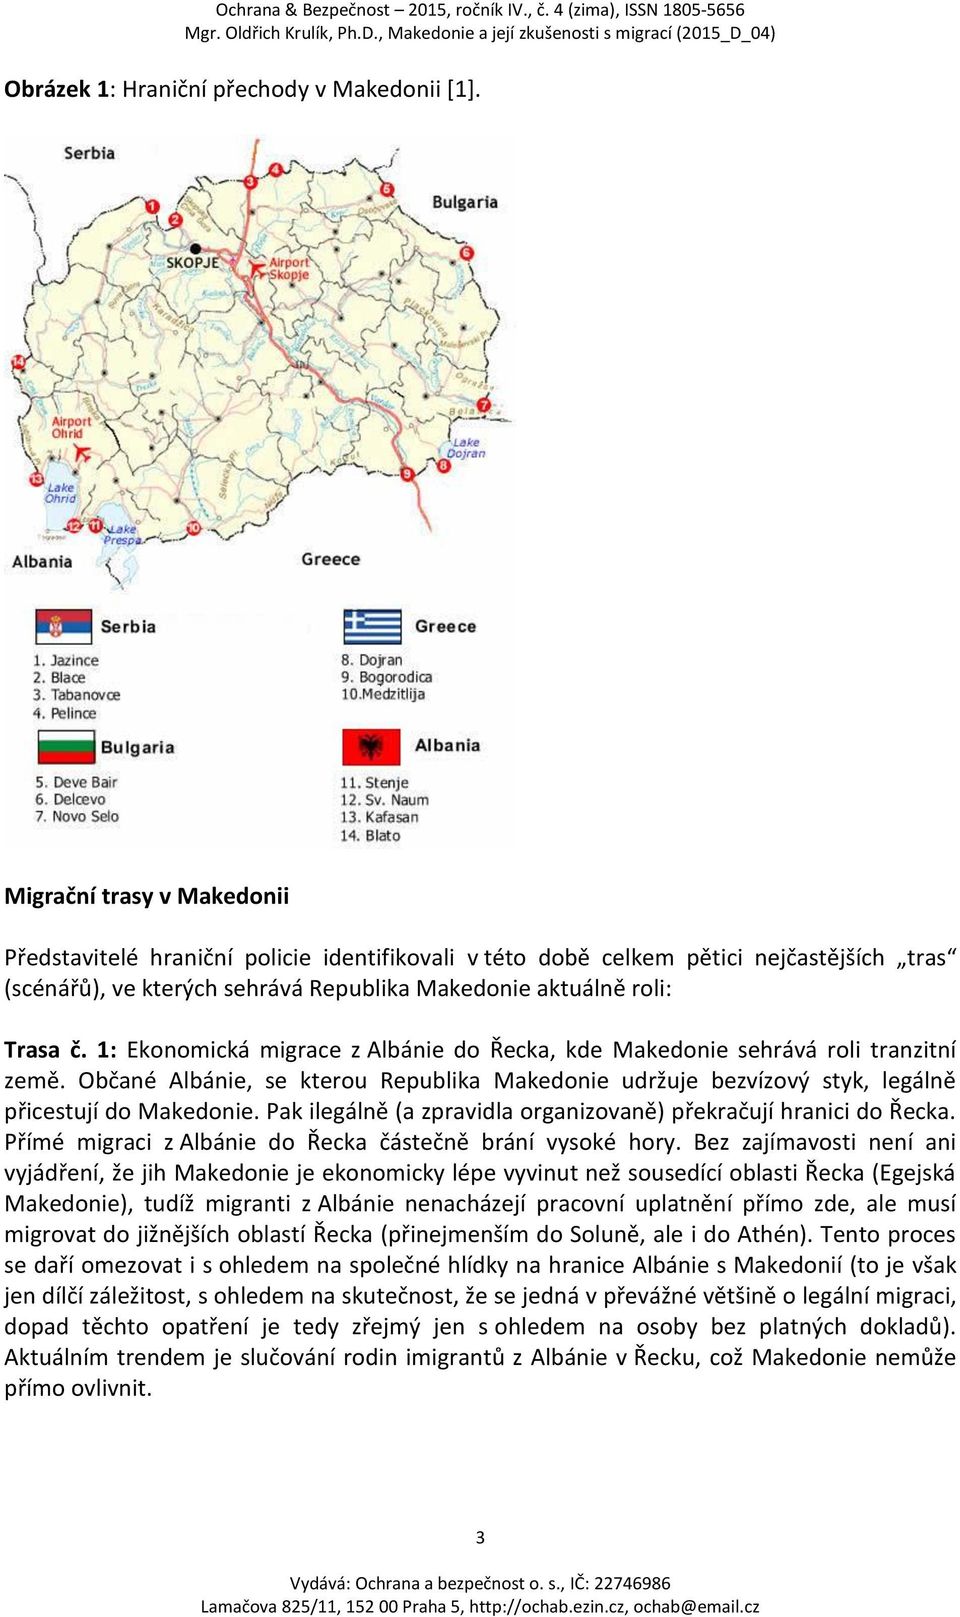 1: Ekonomická migrace z Albánie do Řecka, kde Makedonie sehrává roli tranzitní země. Občané Albánie, se kterou Republika Makedonie udržuje bezvízový styk, legálně přicestují do Makedonie.